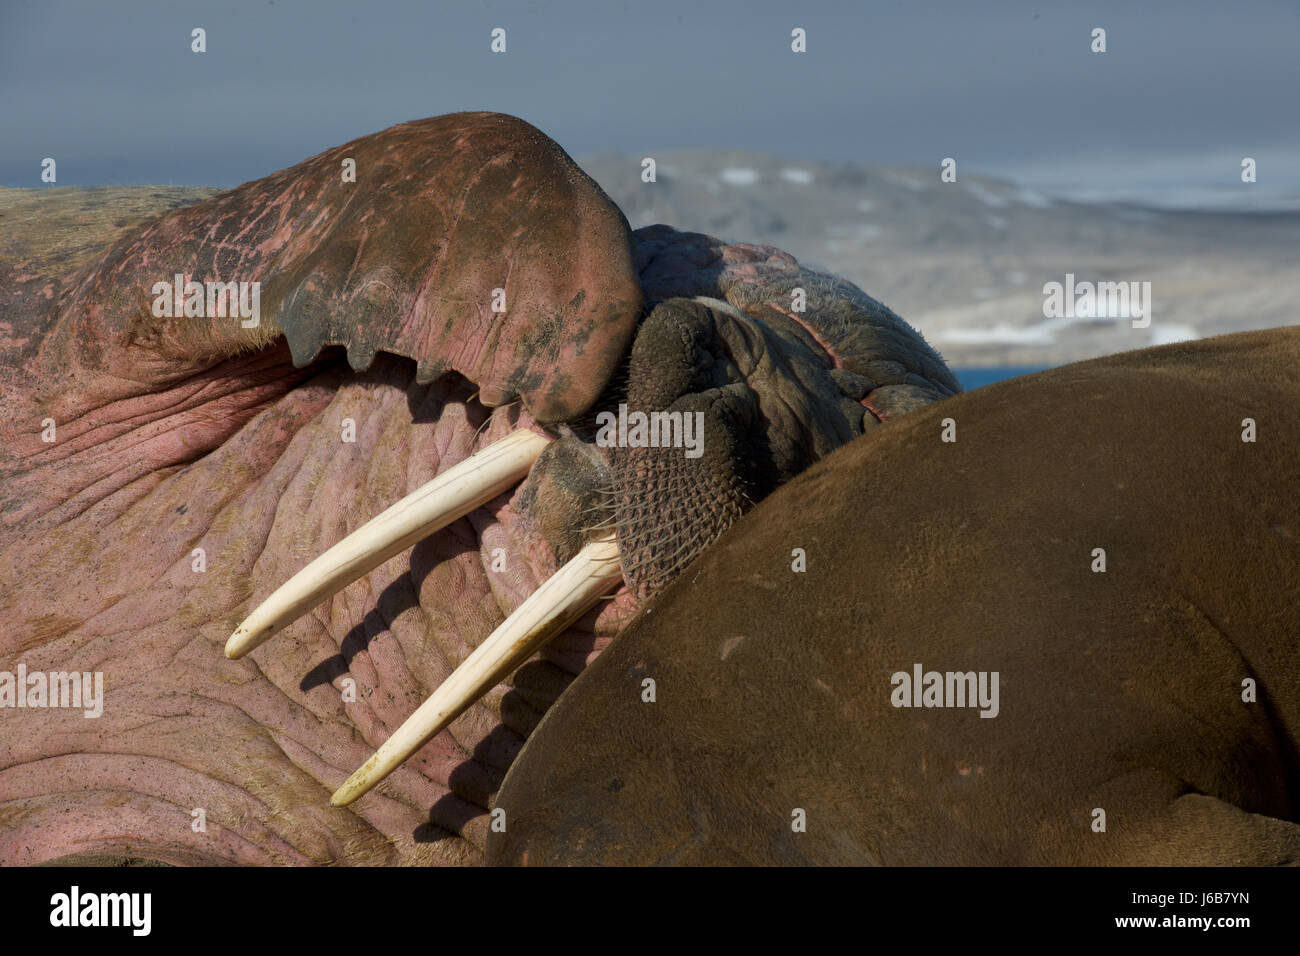 walrus, Odobenus rosmarus rosmarus Stock Photo